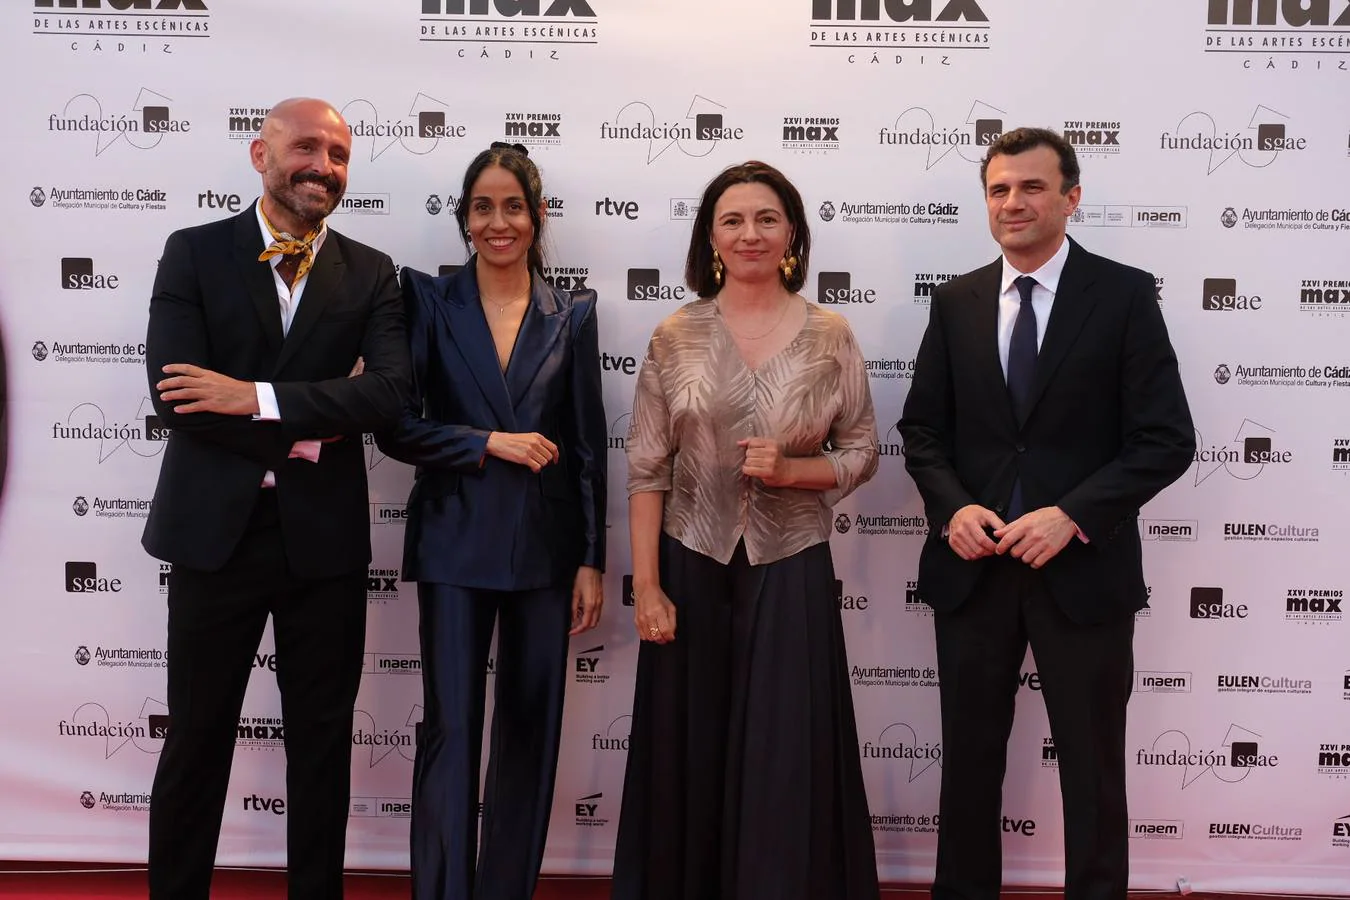 Fotos: La alfombra roja de los Premios Max de Teatro en Cádiz (1)